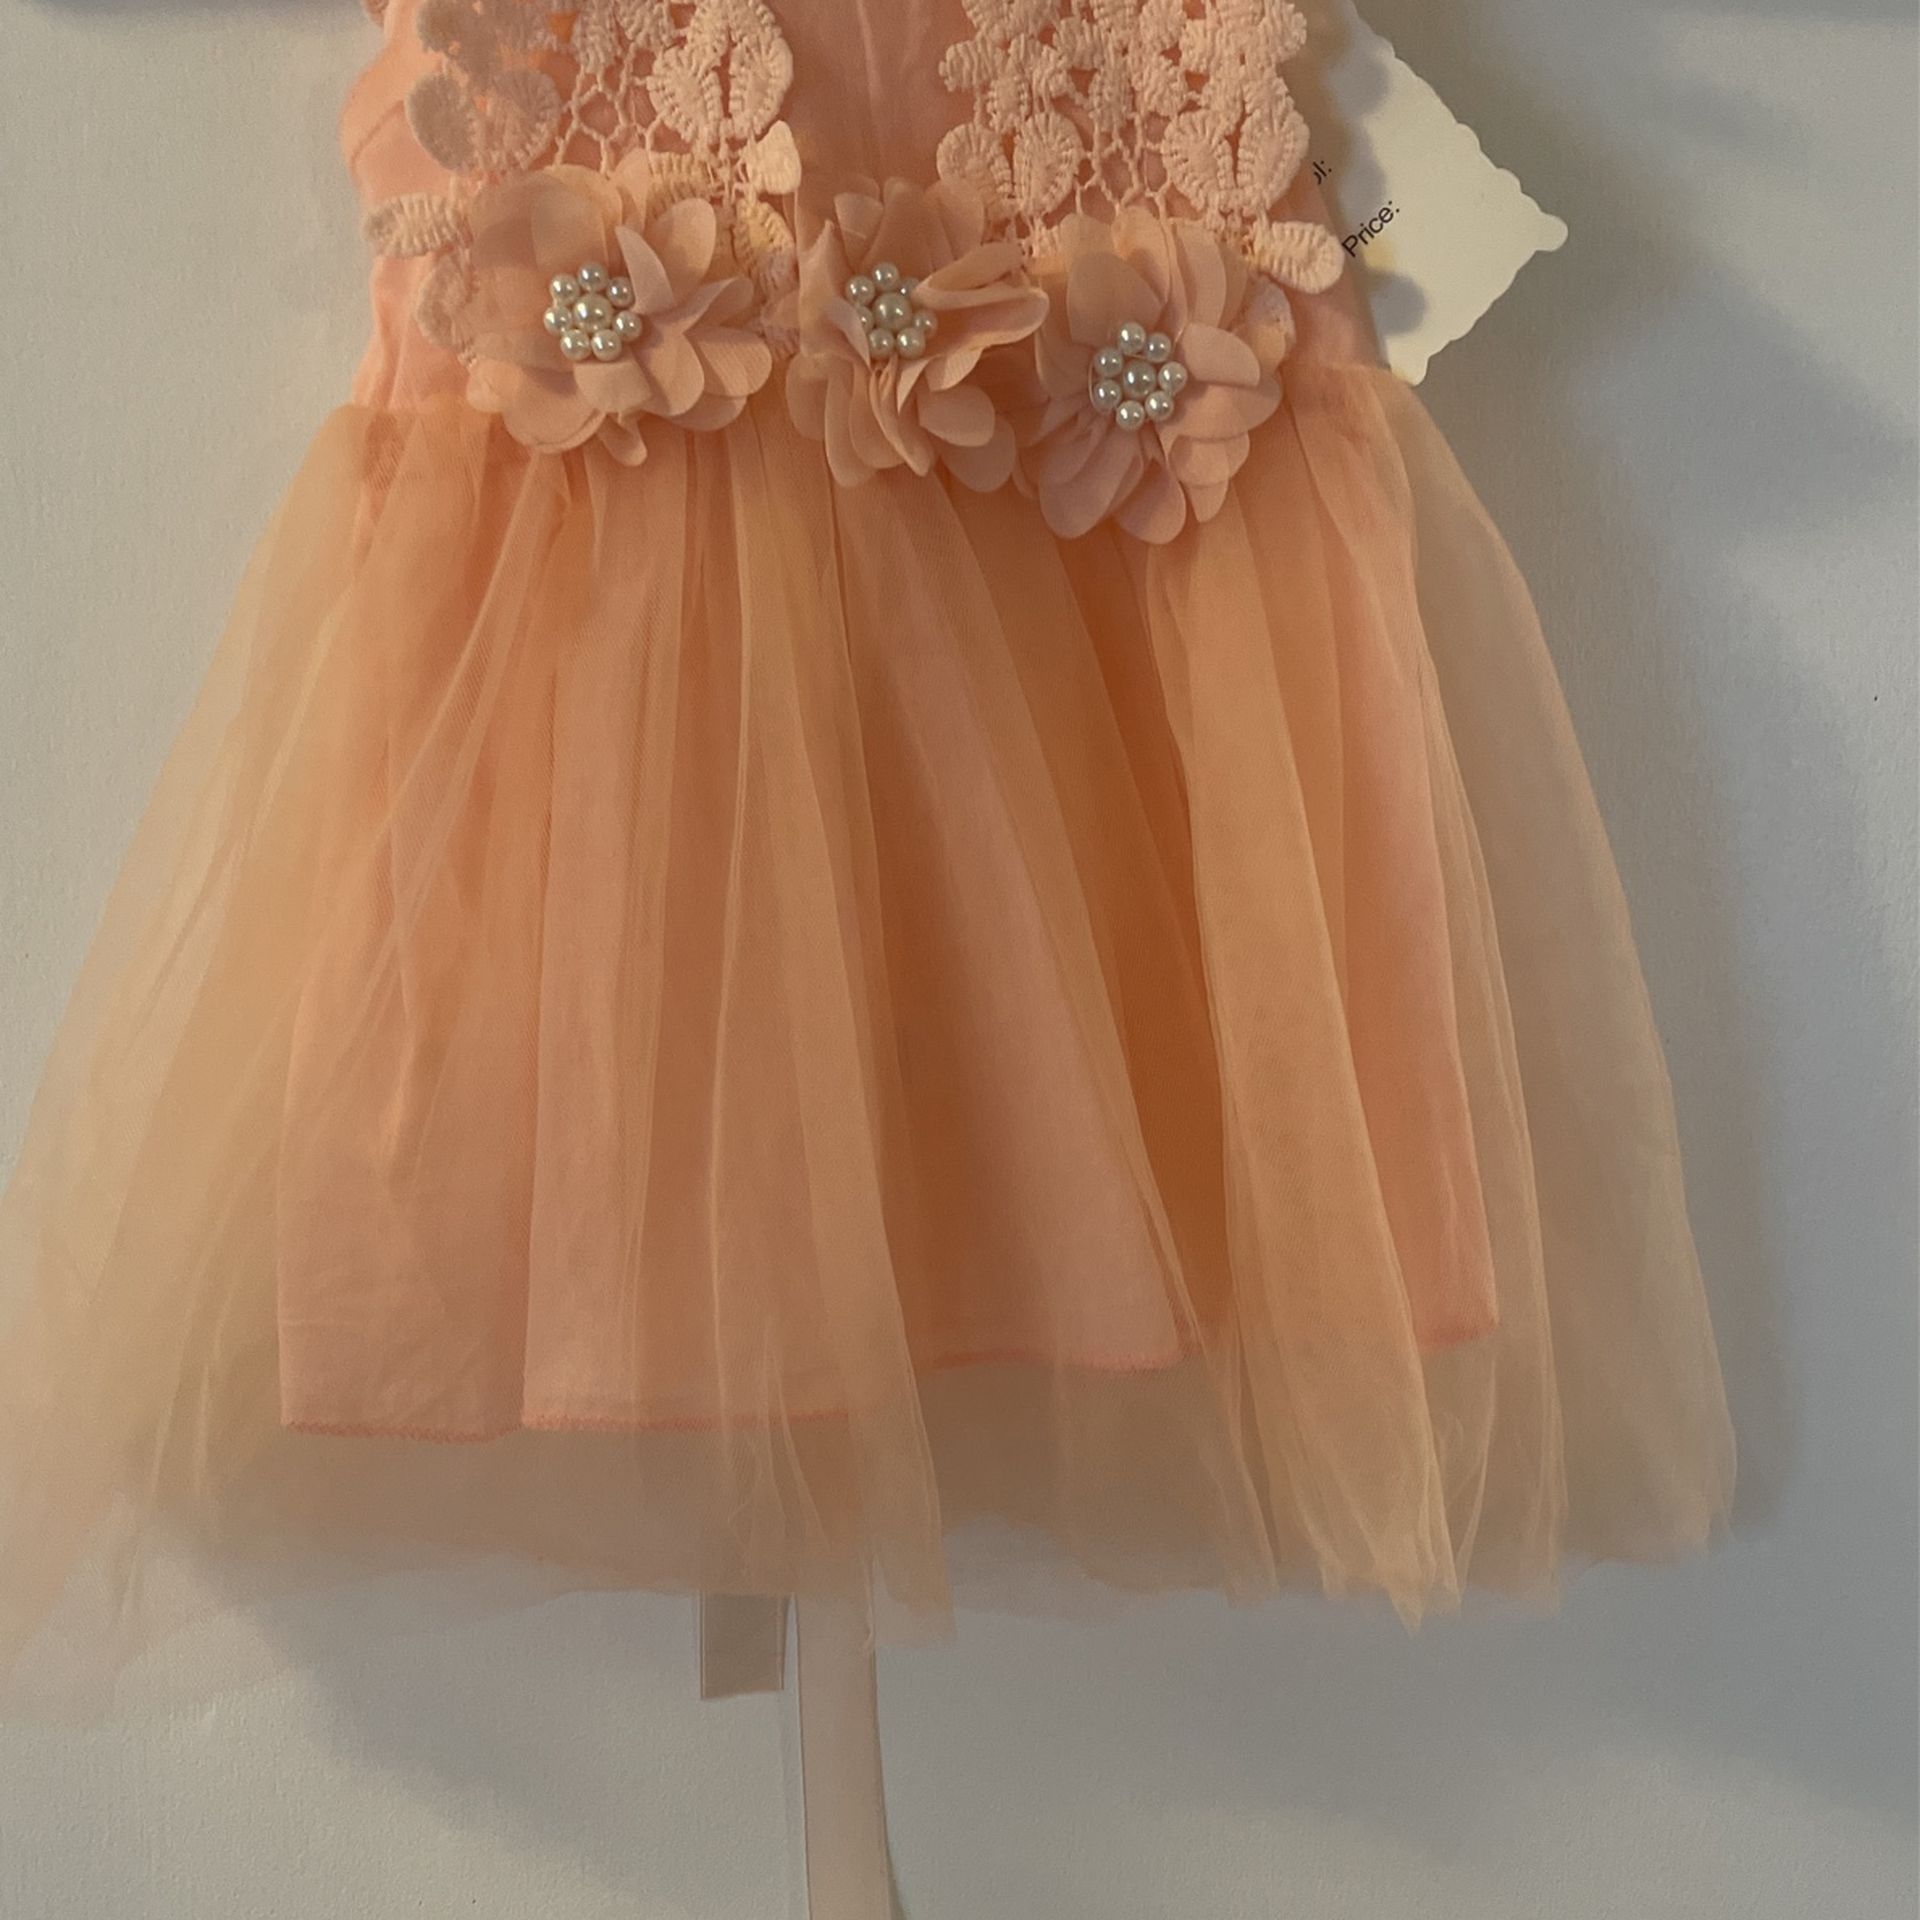 Little Girls Sleeveless Dress Size6/9 Mos, New 